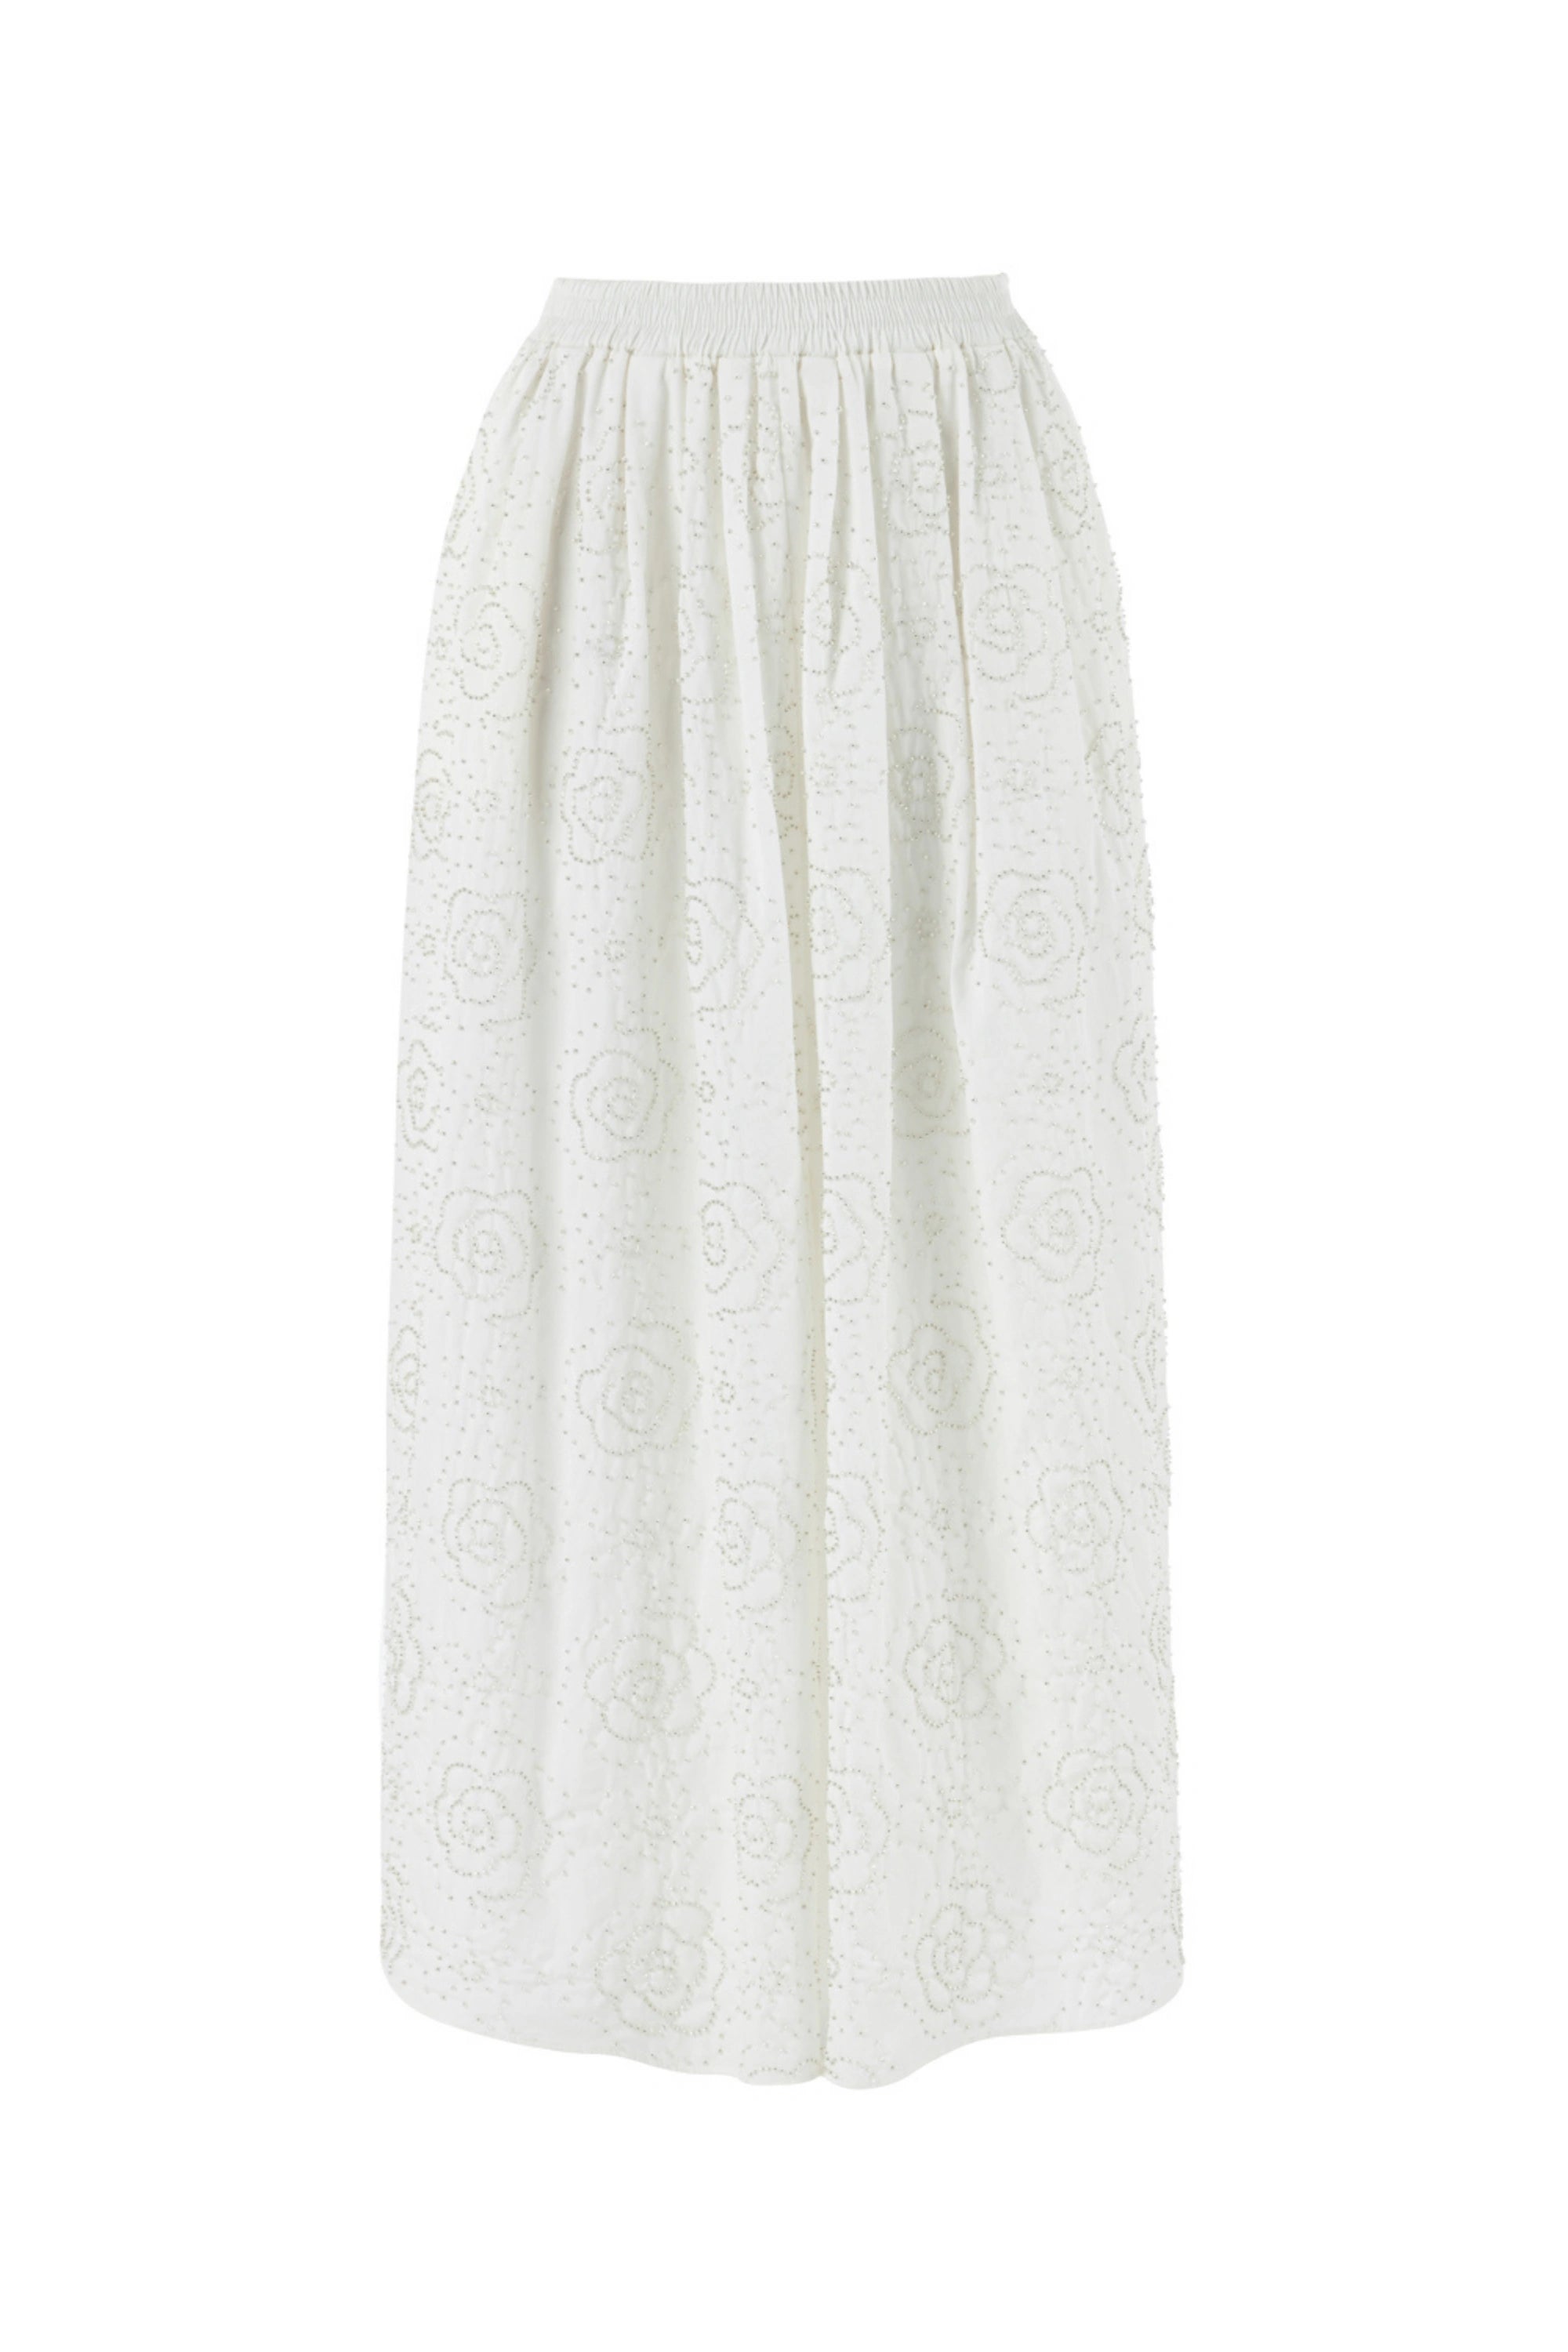 Stone Detailed Long Skirt